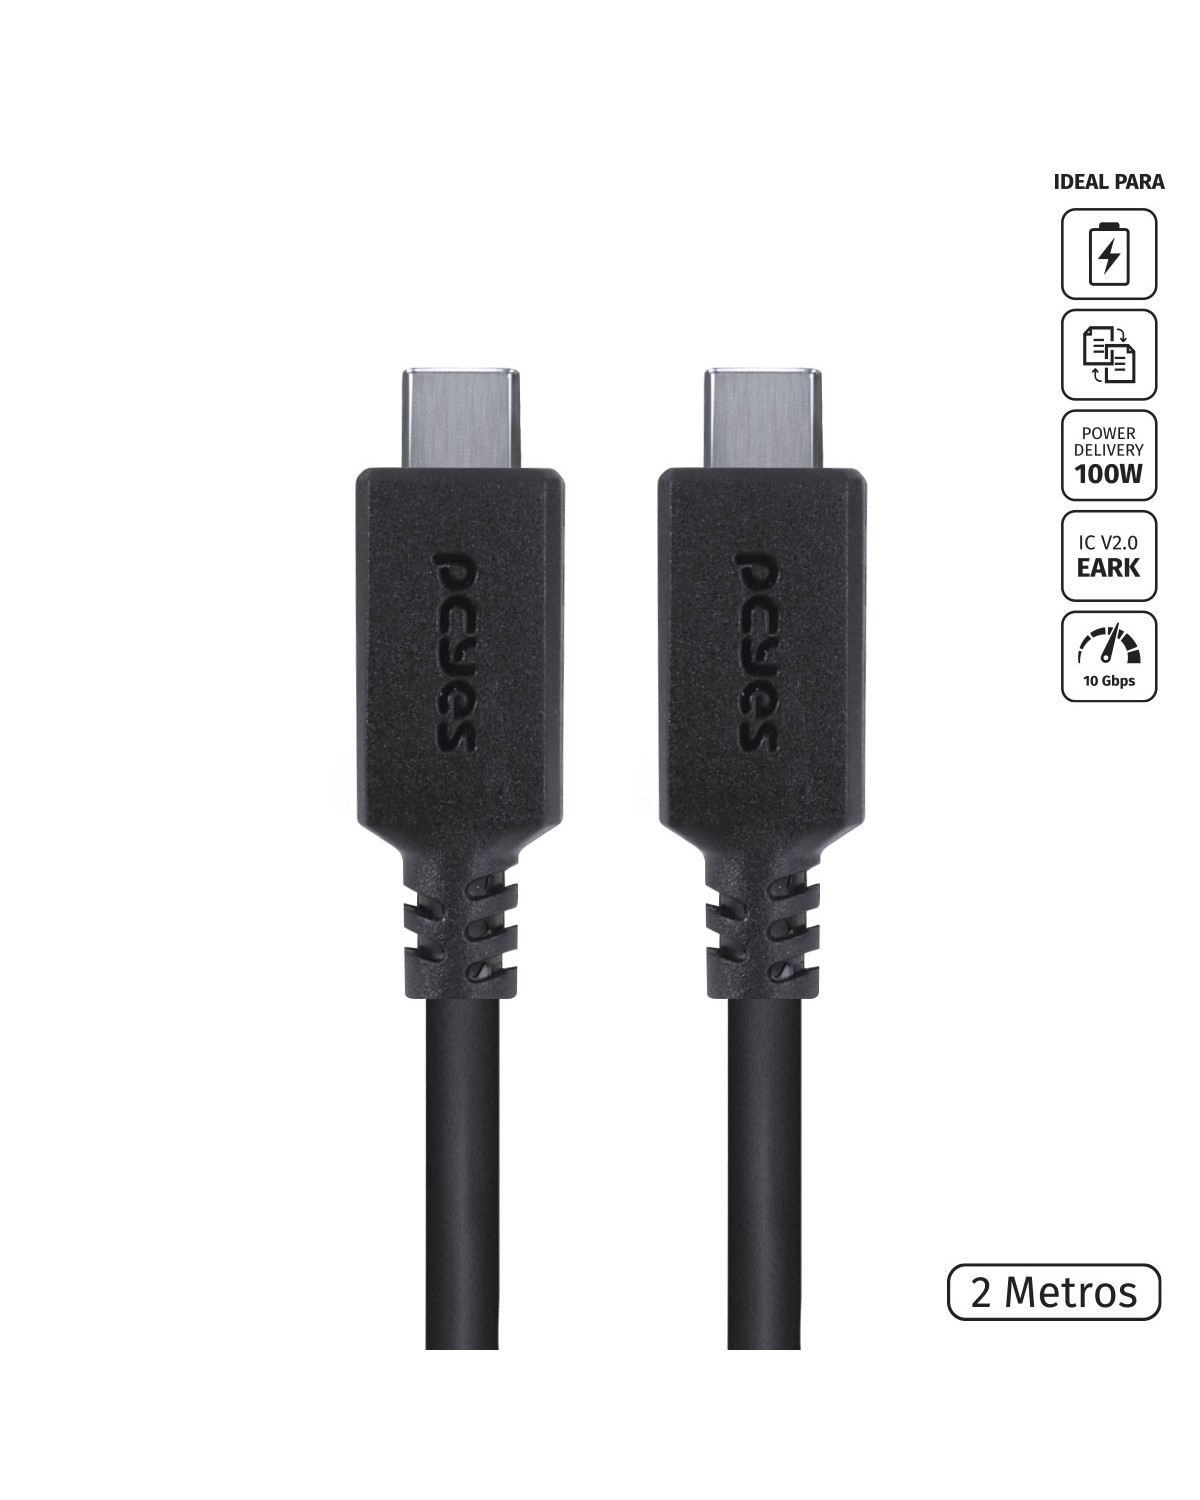 CABO USB TIPO C 3.1 PARA USB TIPO C COM POWER DELIVERY (PD) 100W PARA CELULAR SMARTPHONE 2 METROS PRETO -  P31UCCP-2